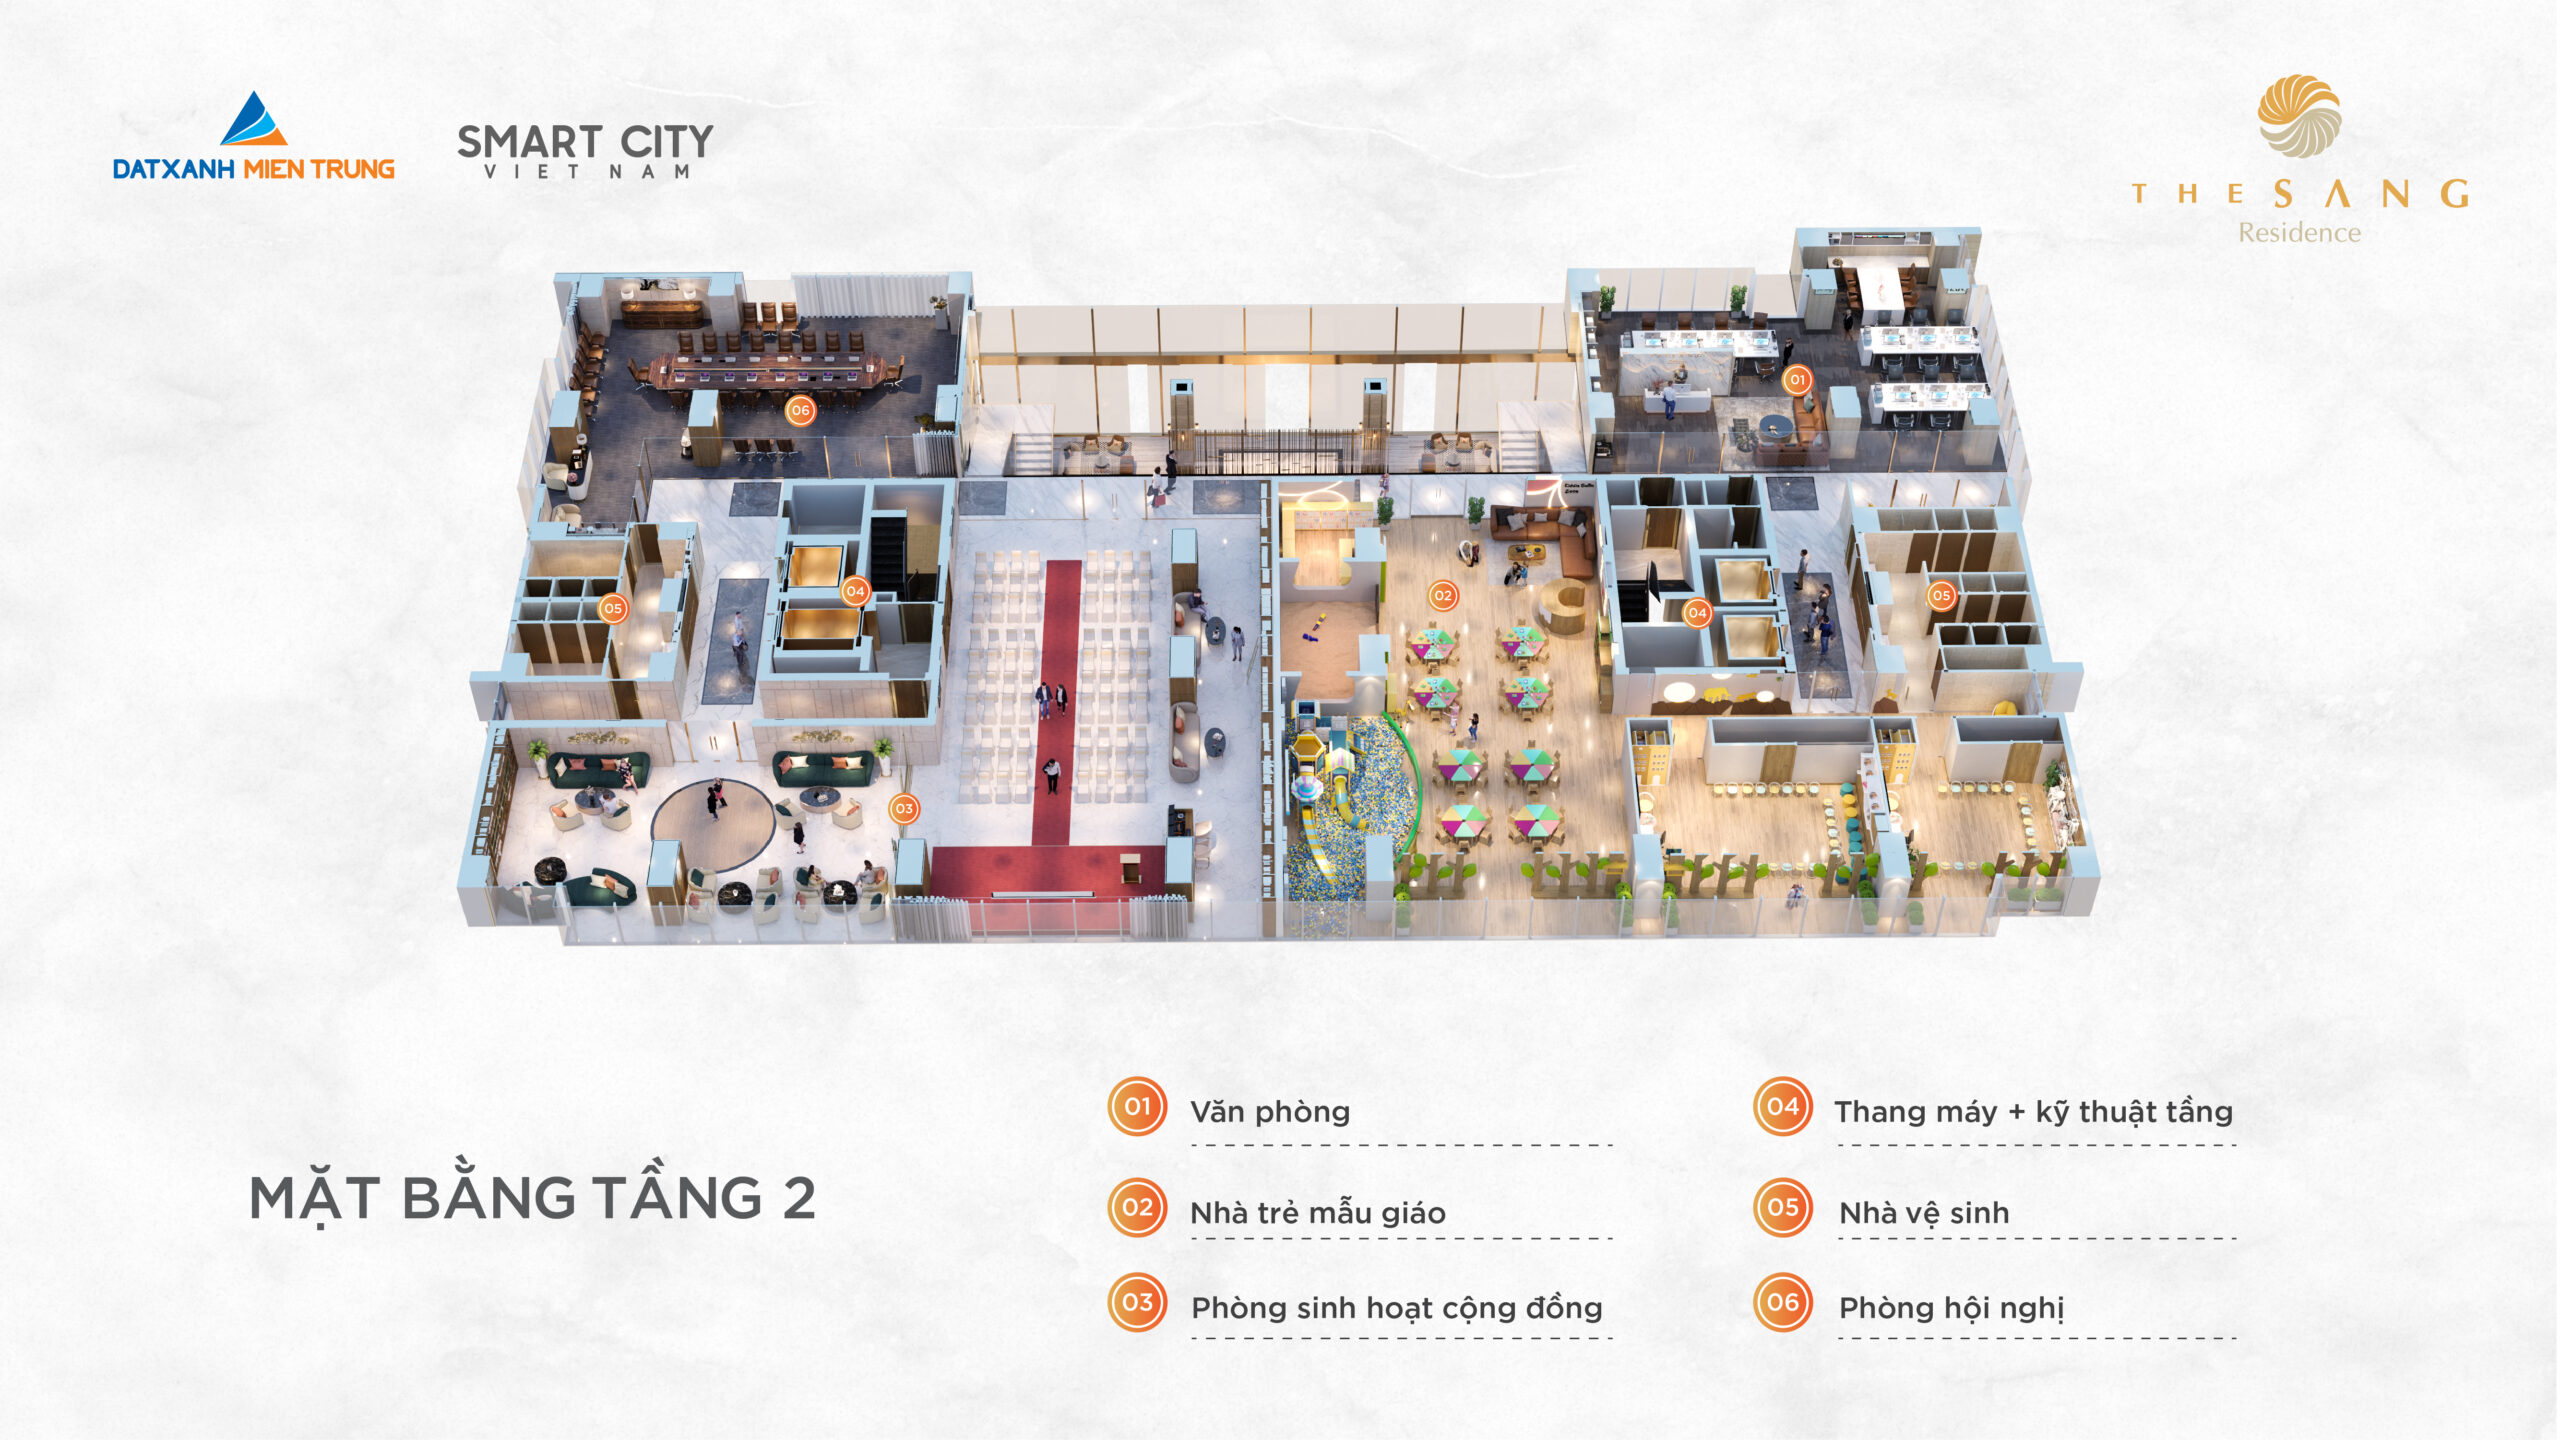 Các lý do khiến chung cư cao cấp được ưa chuộng - Viet Nam Smart City